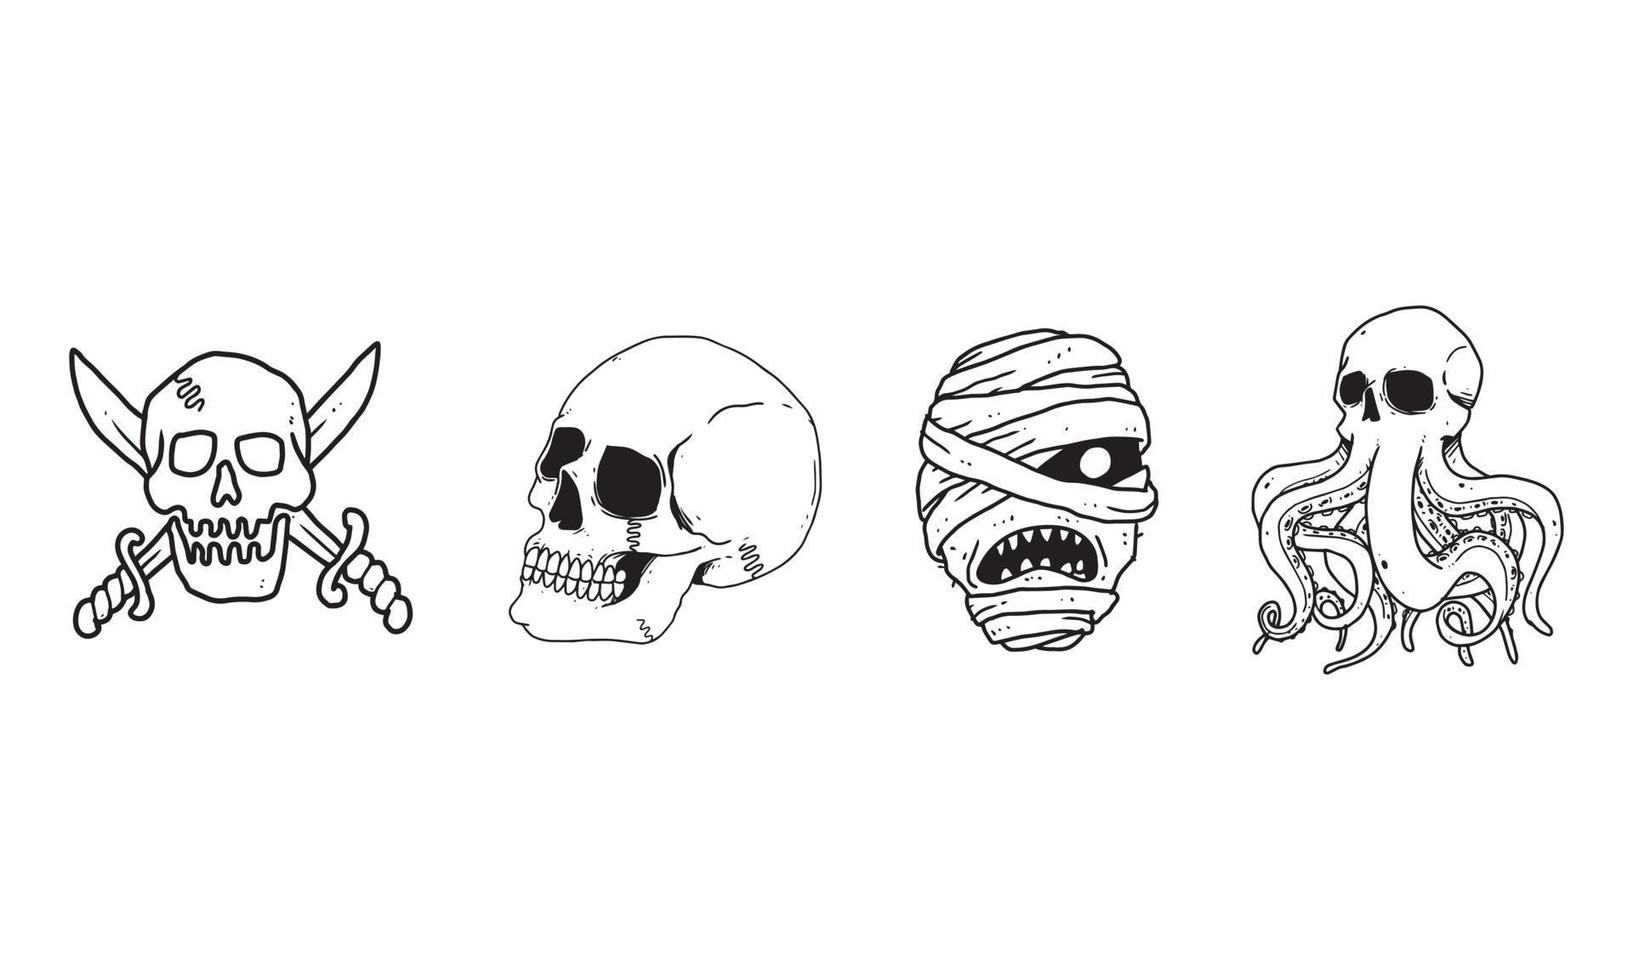 cráneo, logotipo pirata, cabeza de momia y conjunto de kraken aislado sobre fondo blanco. dibujo de dibujos animados contorneado de espeluznante, gótico, icono de muerte para tatuaje, póster, tema de halloween, etc. vector